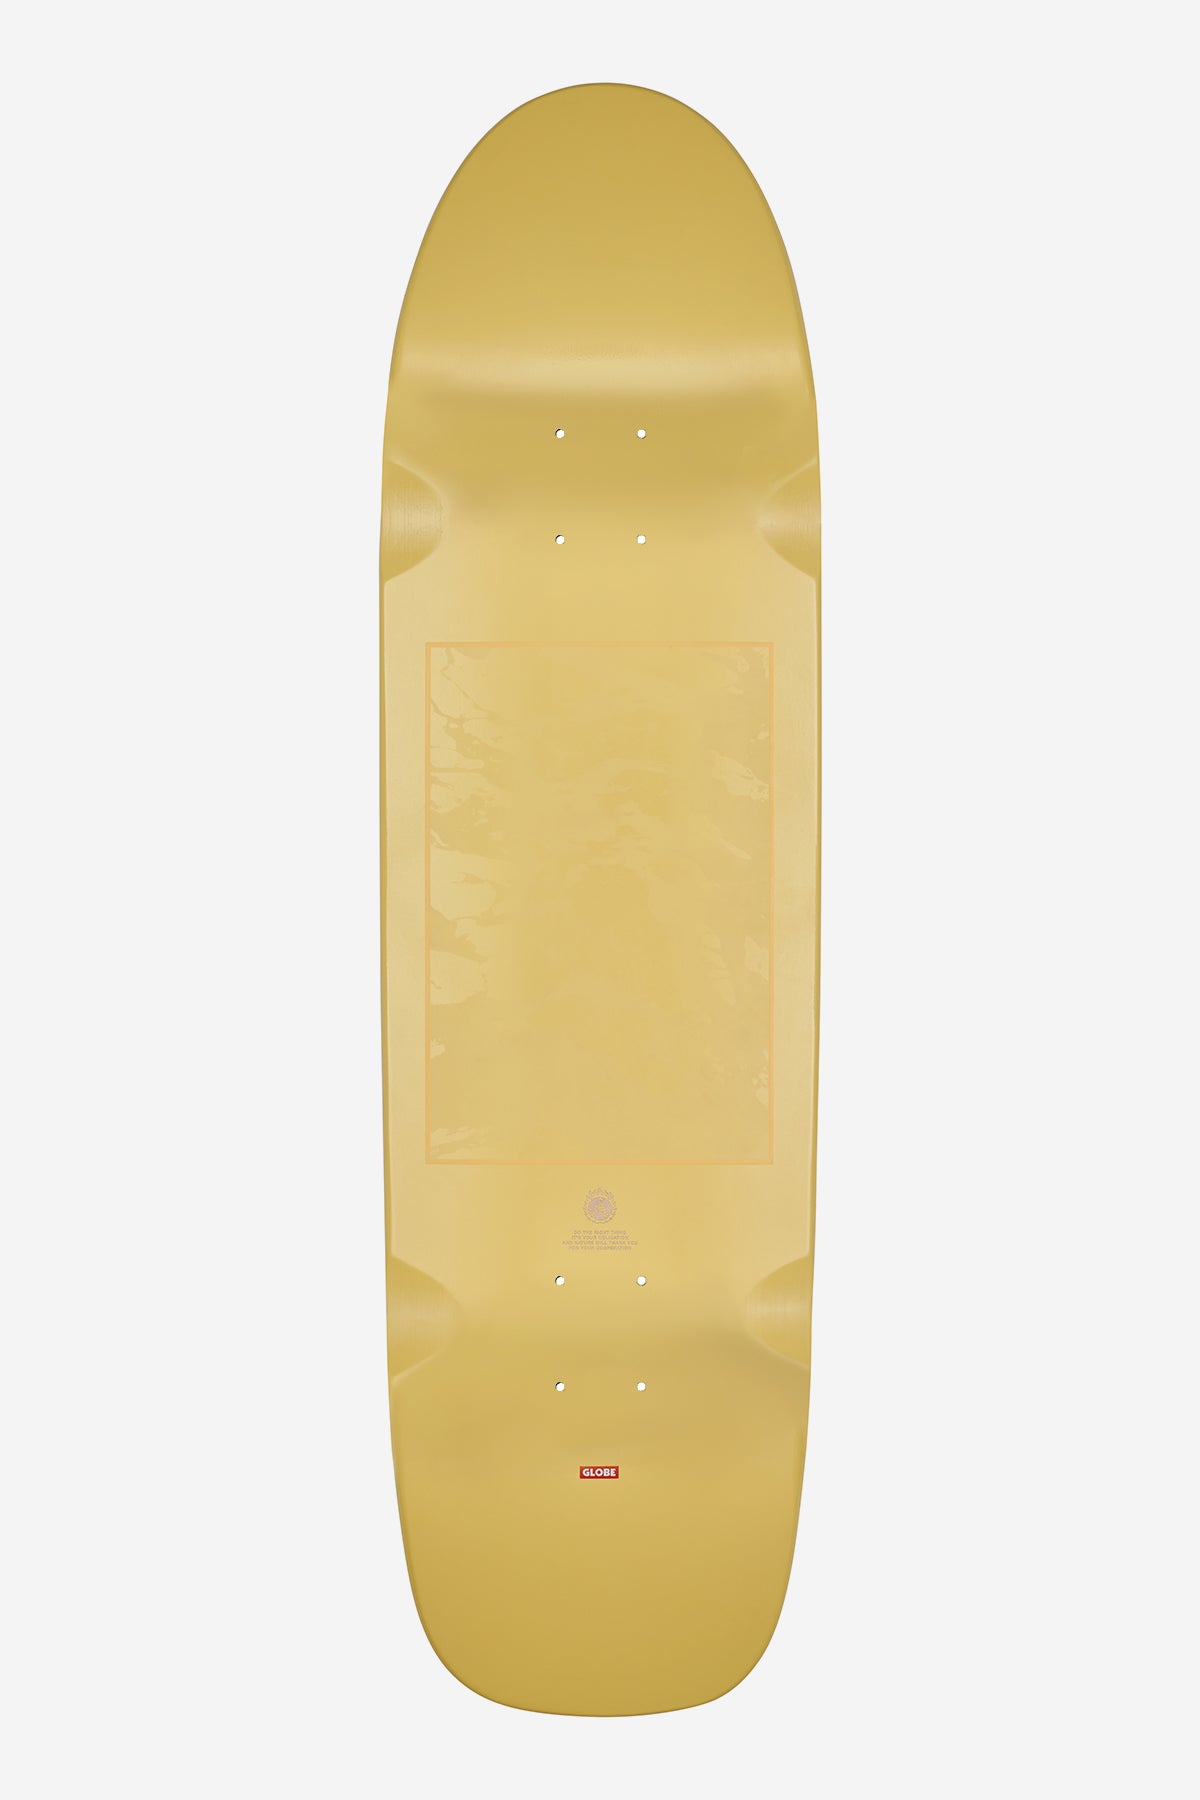 shooter yellow comehell 8.625" skateboard deck